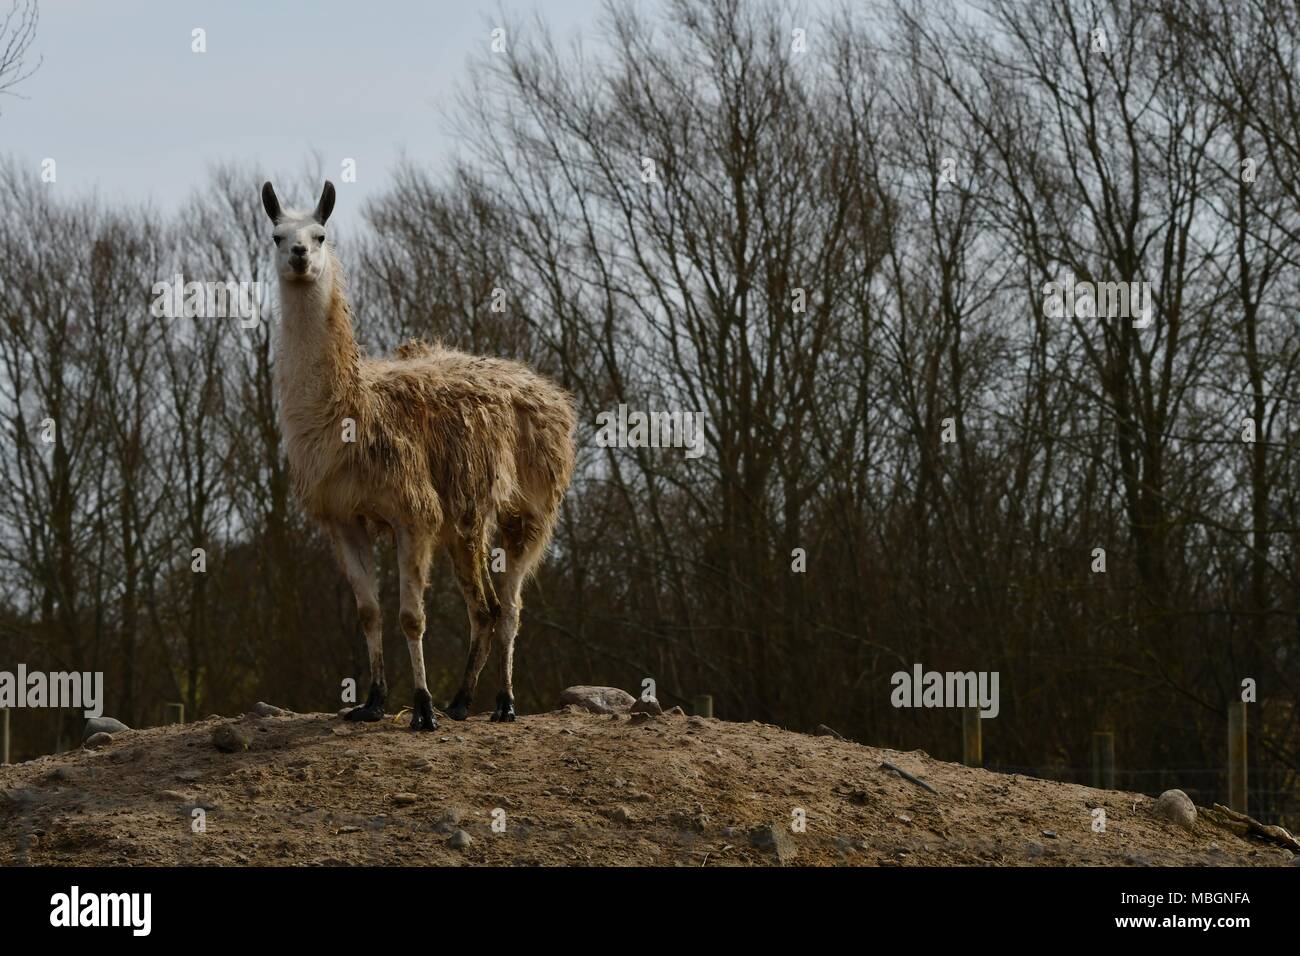 Lama glama, llama alpaca - portrait of cute llamas Stock Photo